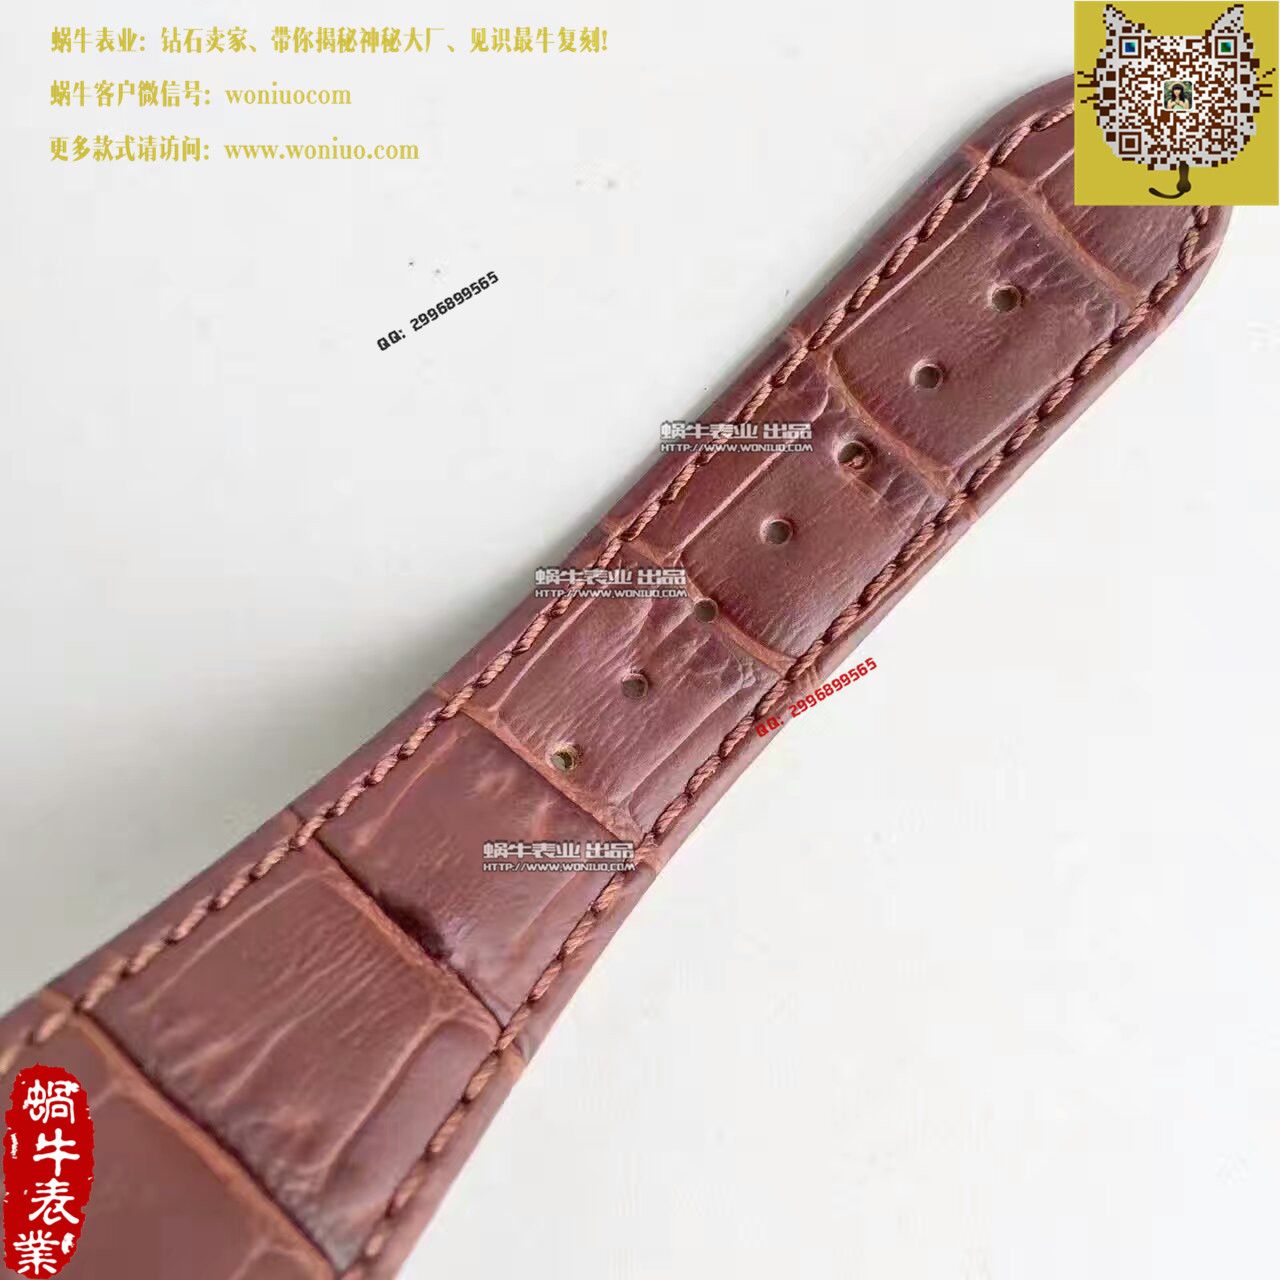 【BP厂1:1复刻手表】百达翡丽运动系列5980R 玫瑰金男士腕表 / BD182